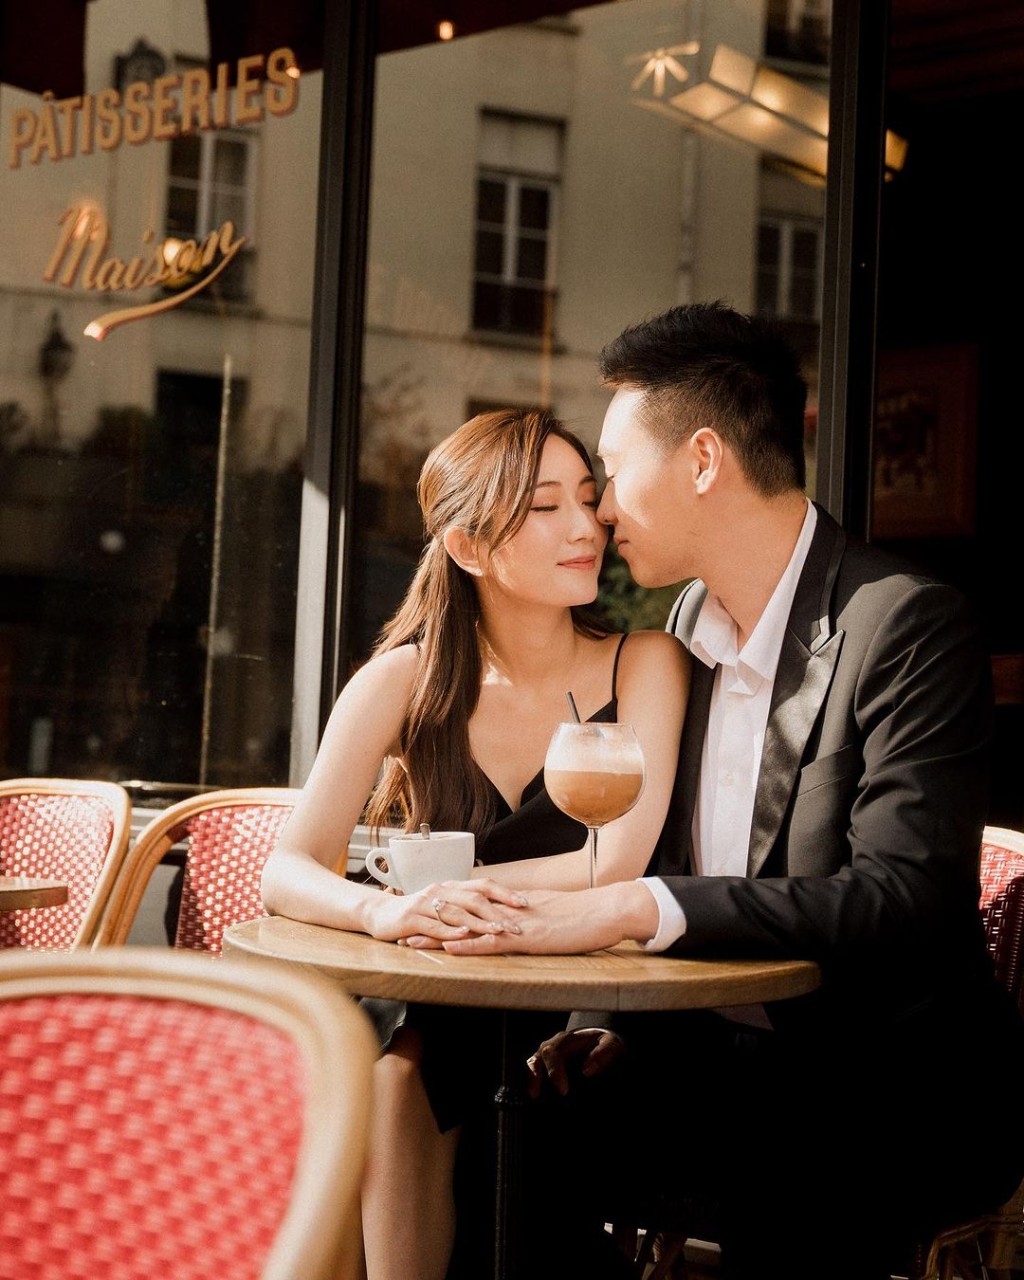 蔡嘉欣与未婚夫在巴黎街头拍照。